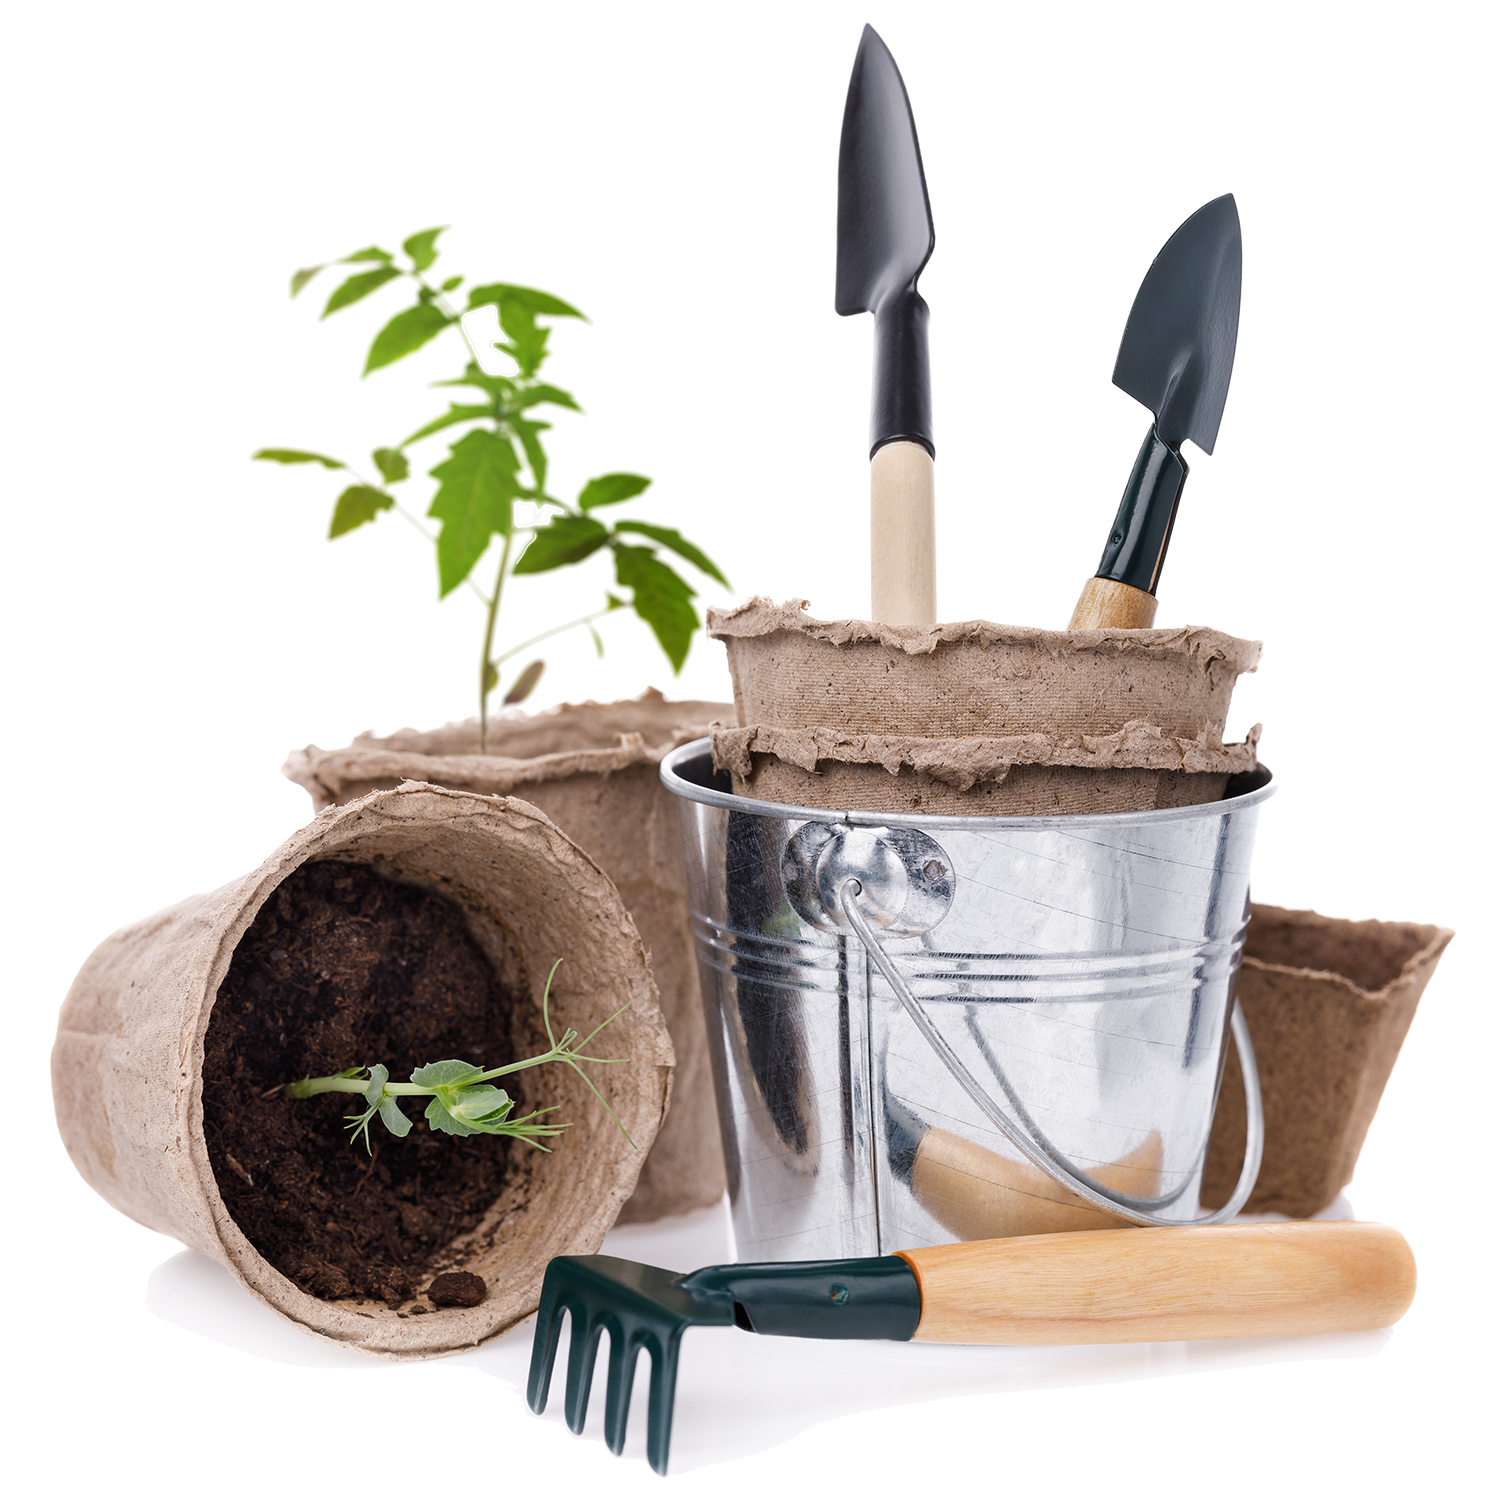 Gradening Tools, pots, and plants